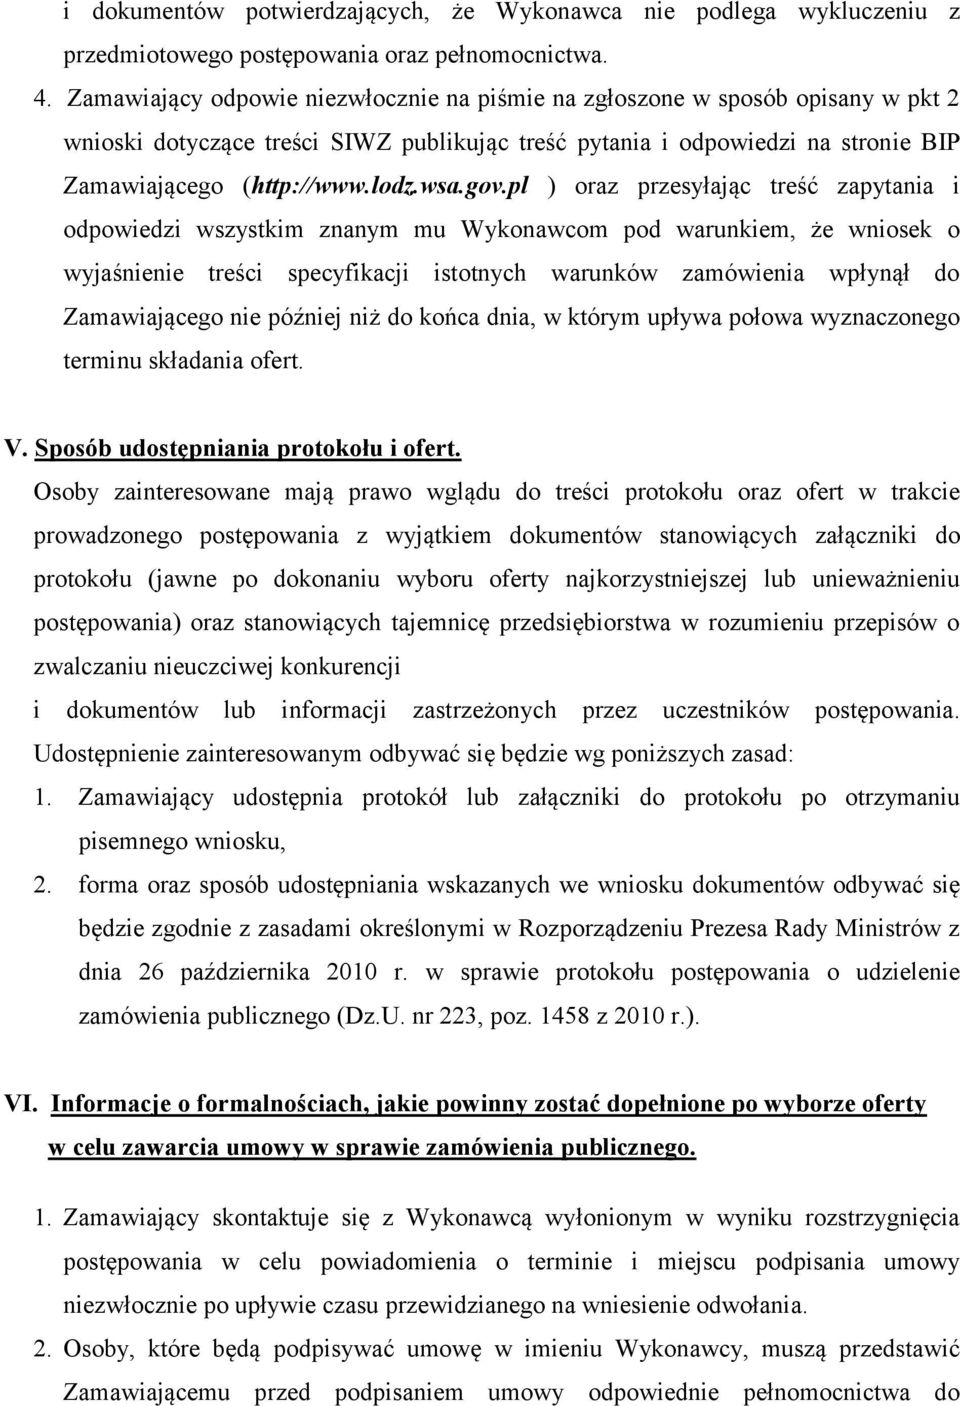 gov.pl ) oraz przesyłając treść zapytania i odpowiedzi wszystkim znanym mu Wykonawcom pod warunkiem, że wniosek o wyjaśnienie treści specyfikacji istotnych warunków zamówienia wpłynął do